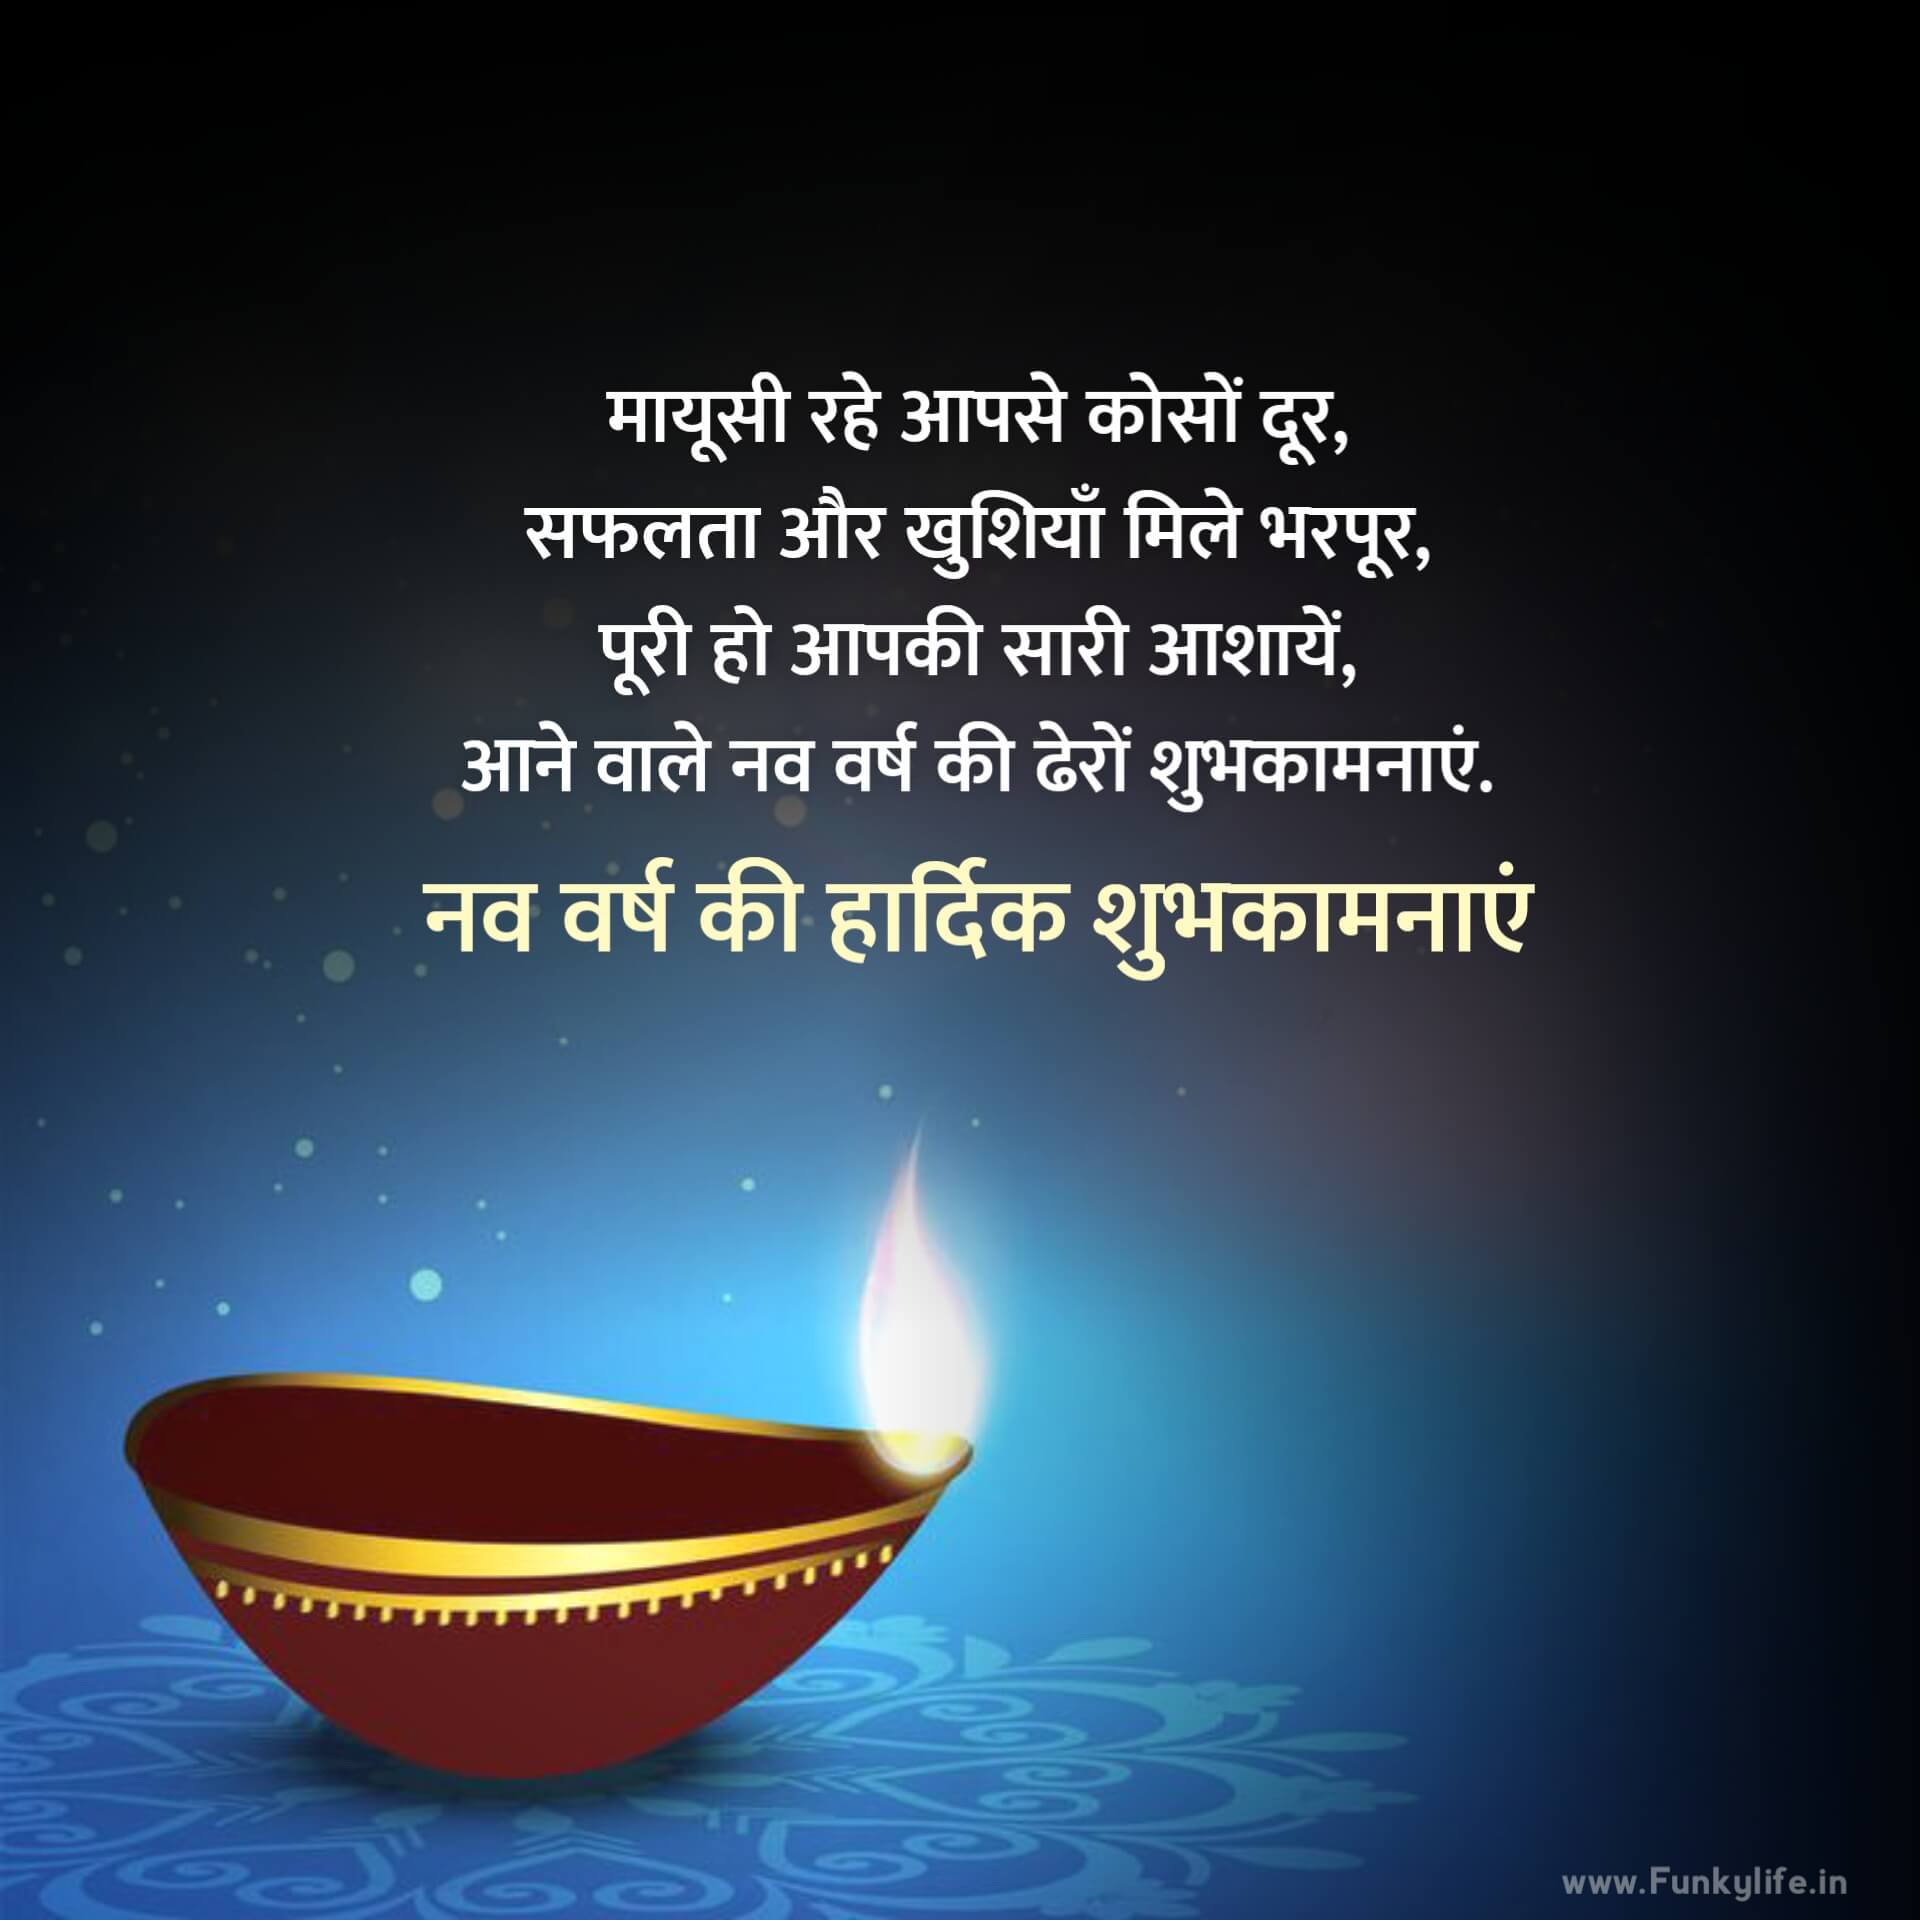 सर्वश्रेष्ठ हिंदी नव वर्ष की शुभकामनाएं